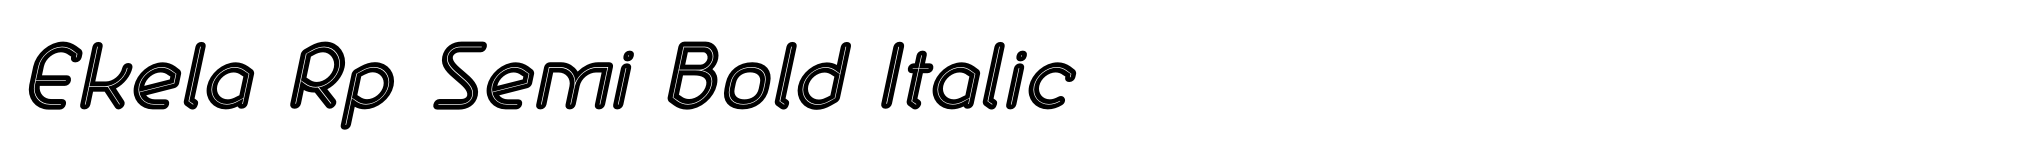 Ekela Rp Semi Bold Italic image